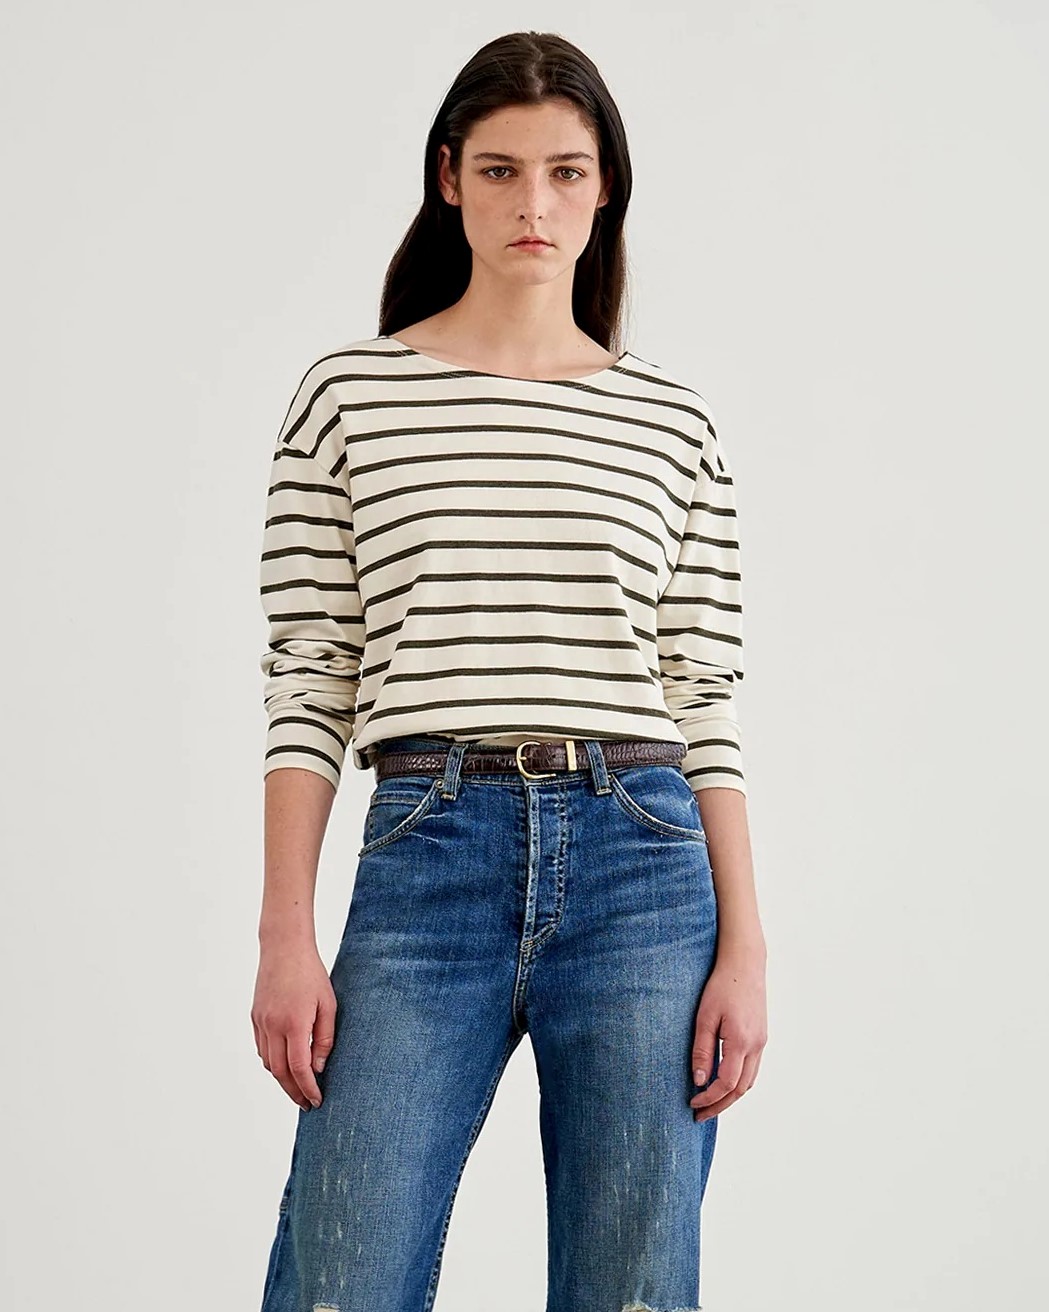 Nili Lotan Arlette Longsleeve Sweater in Olive Stripes XS